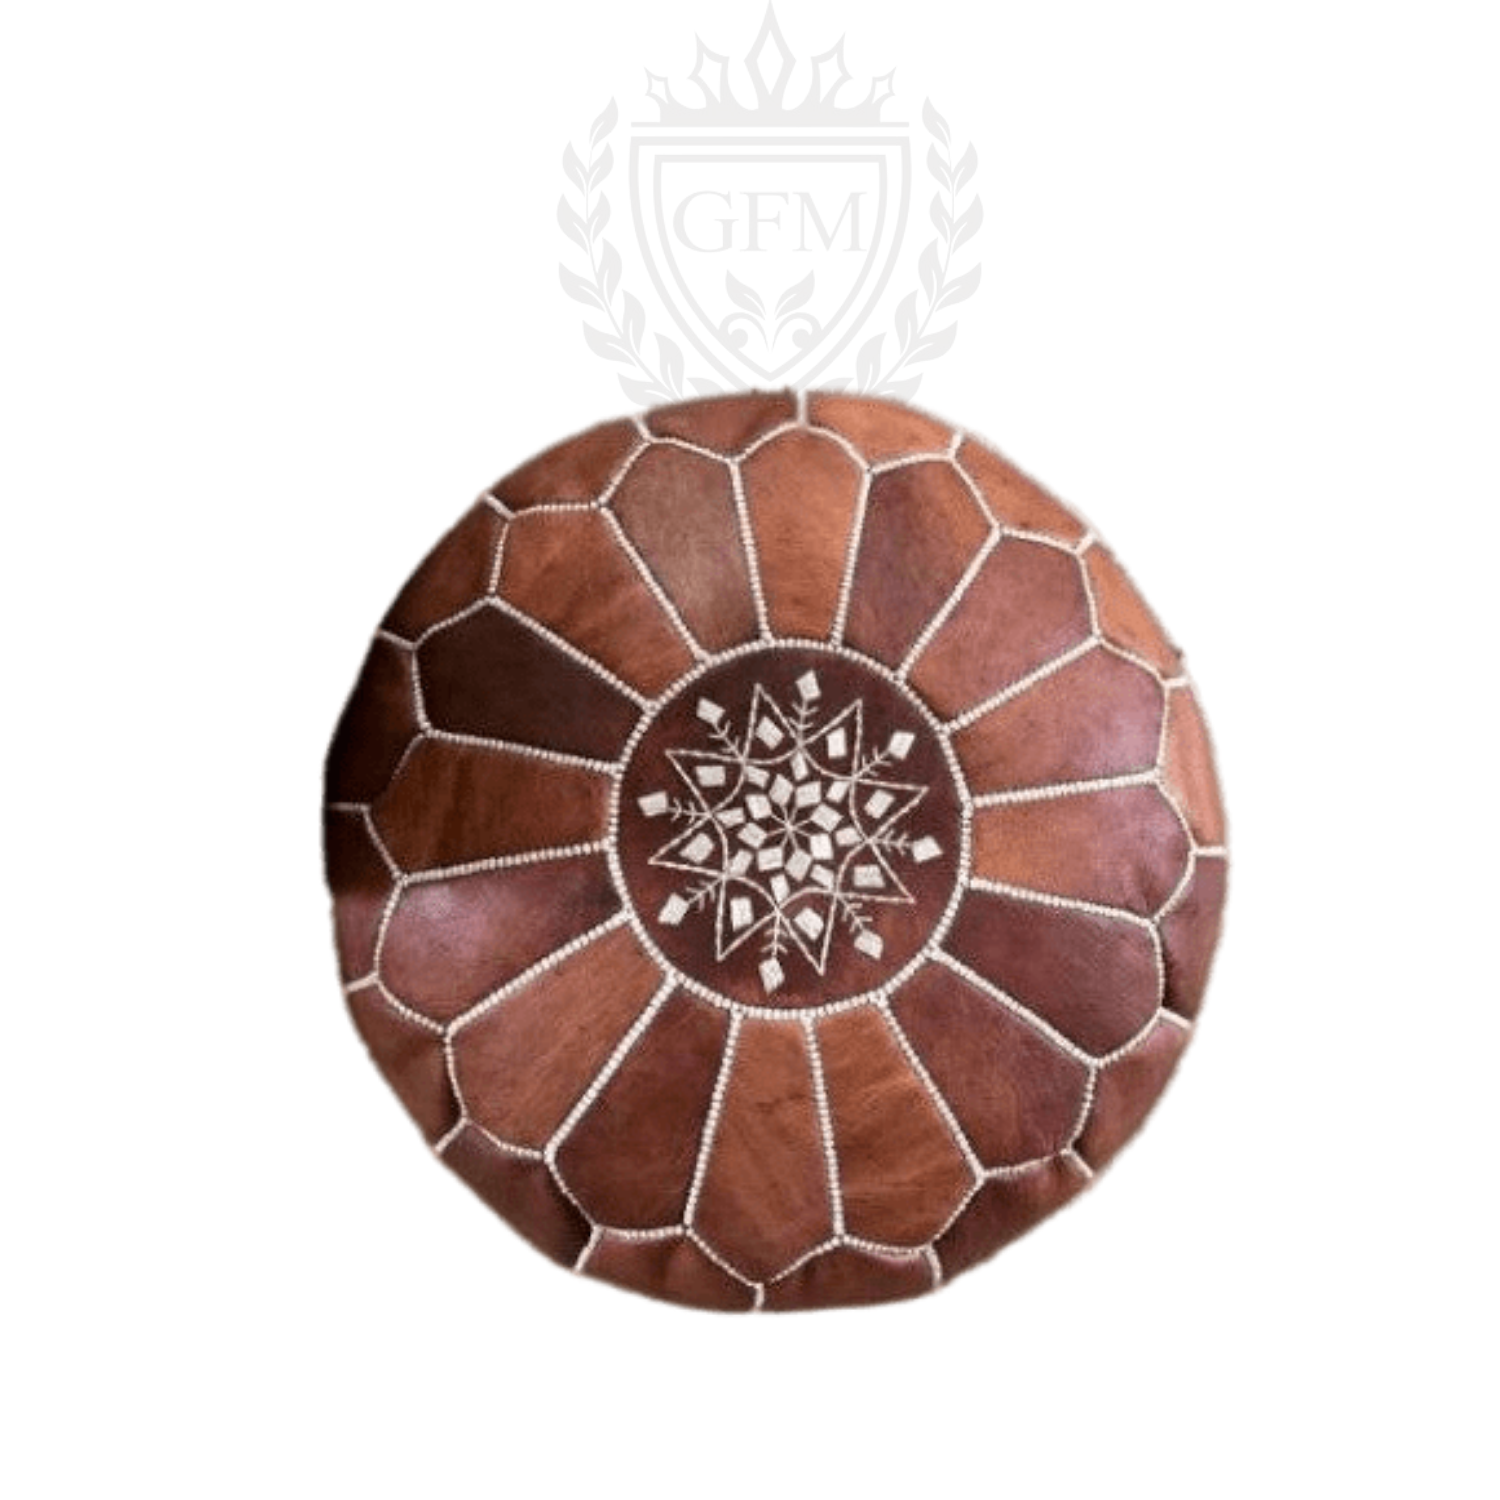 Pouf Moroccan leather pouf, Moroccan Ottoman pouf